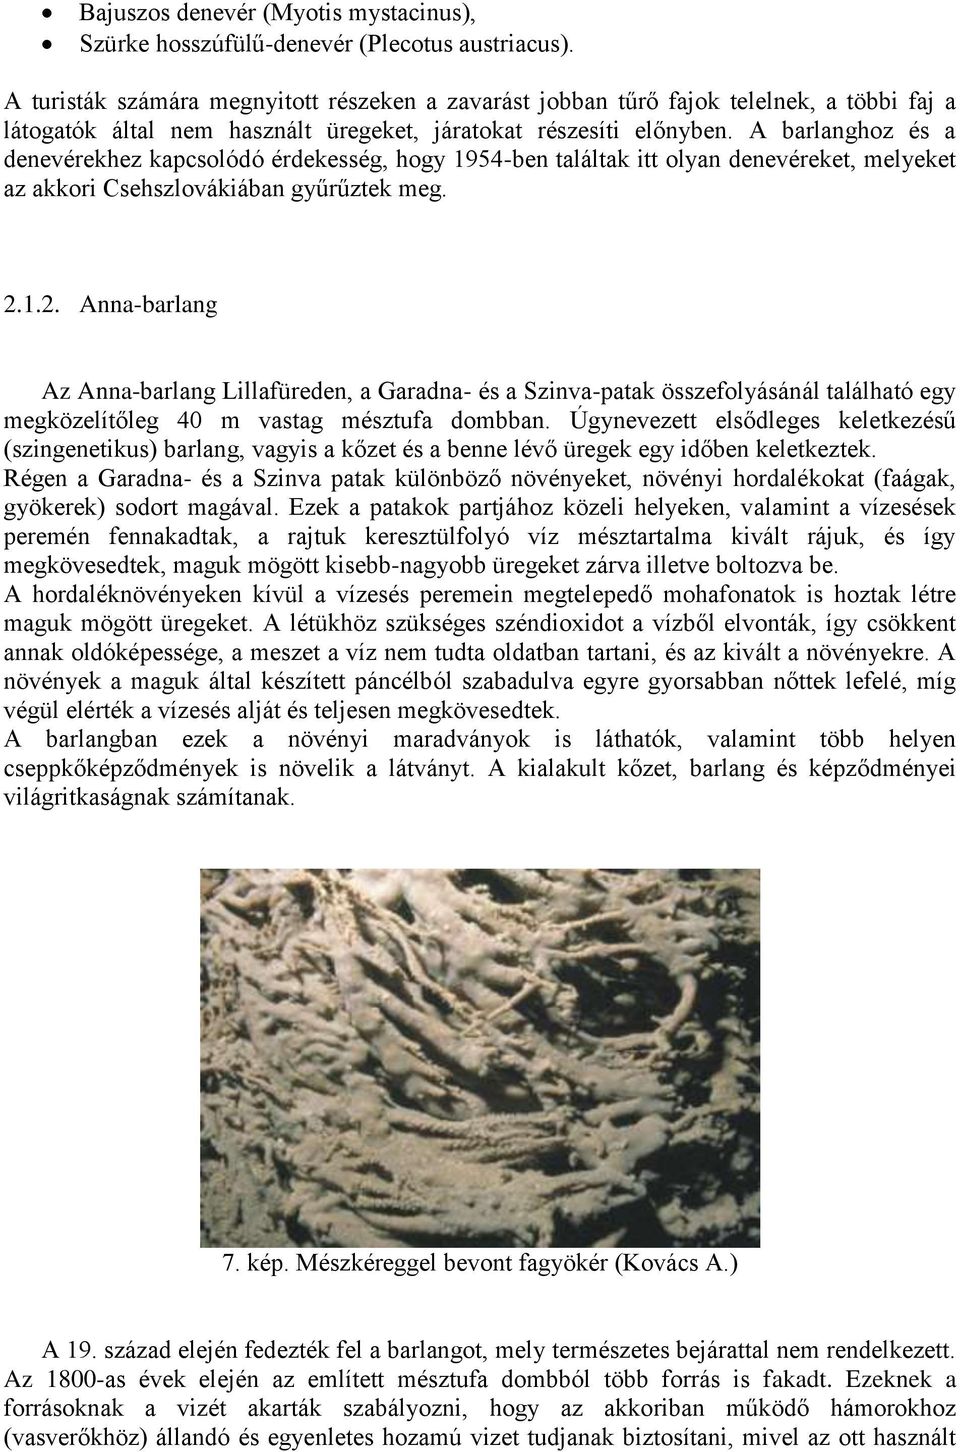 A barlanghoz és a denevérekhez kapcsolódó érdekesség, hogy 1954-ben találtak itt olyan denevéreket, melyeket az akkori Csehszlovákiában gyűrűztek meg. 2.